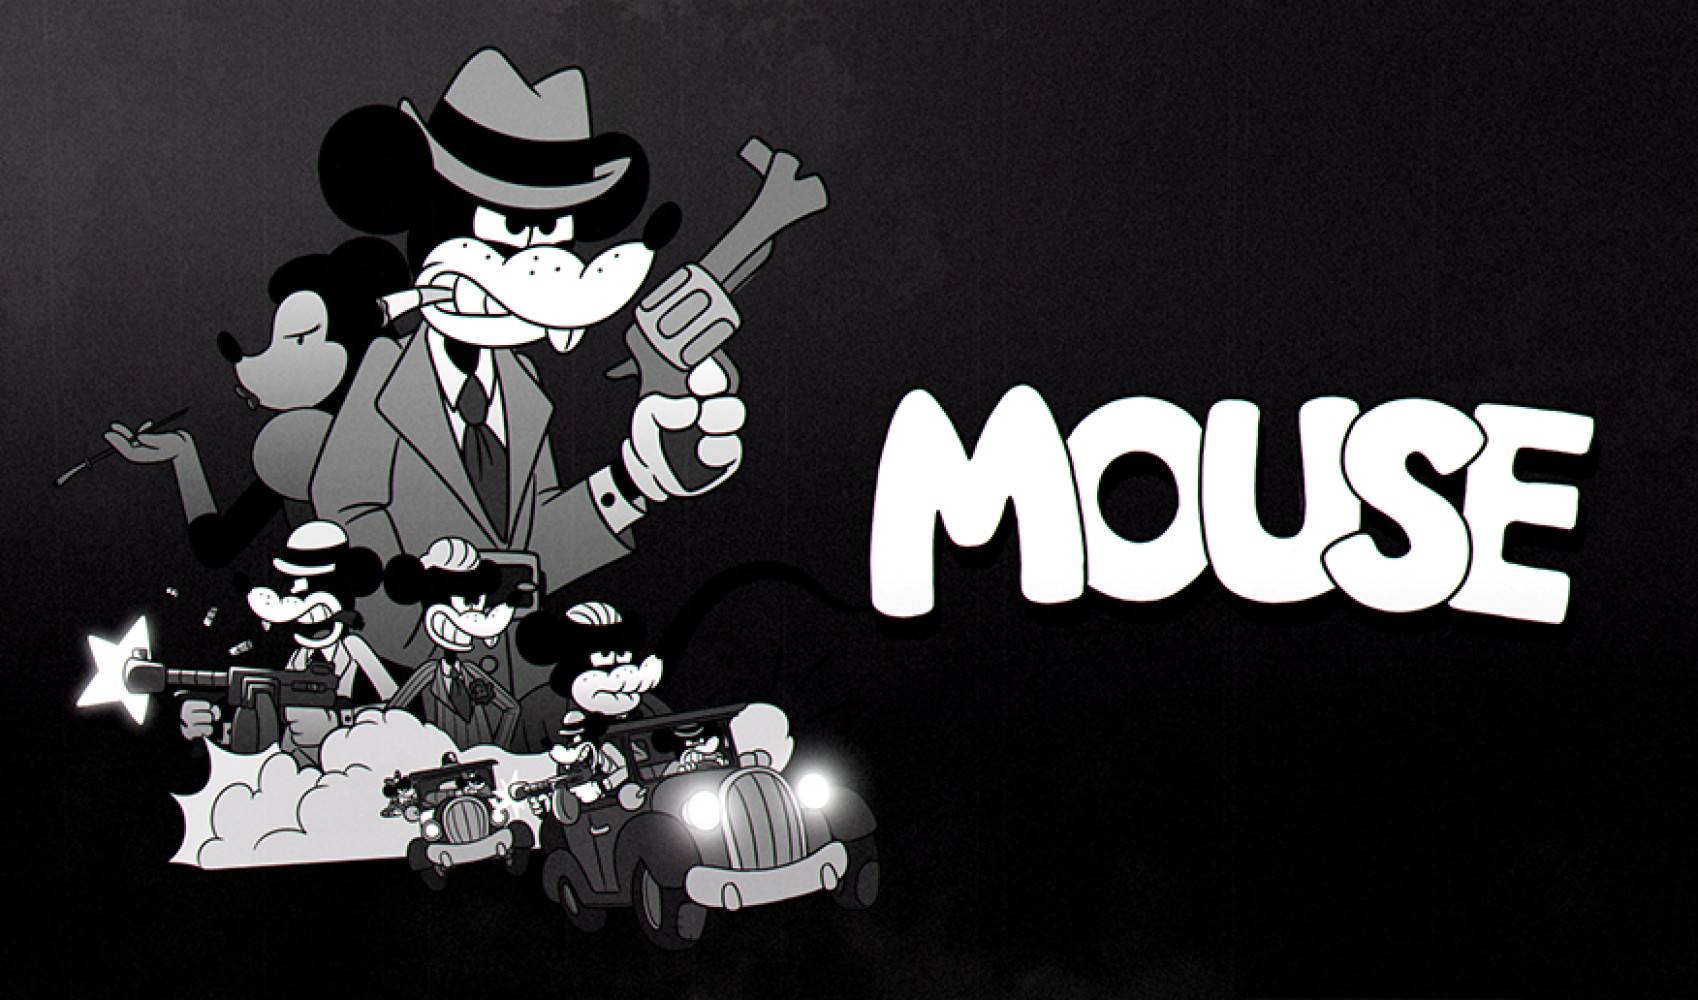 受 1930 年代卡通启发的射击游戏《MOUSE》正式亮相，计划登陆 PC & XBOX & SWITCH 平台！